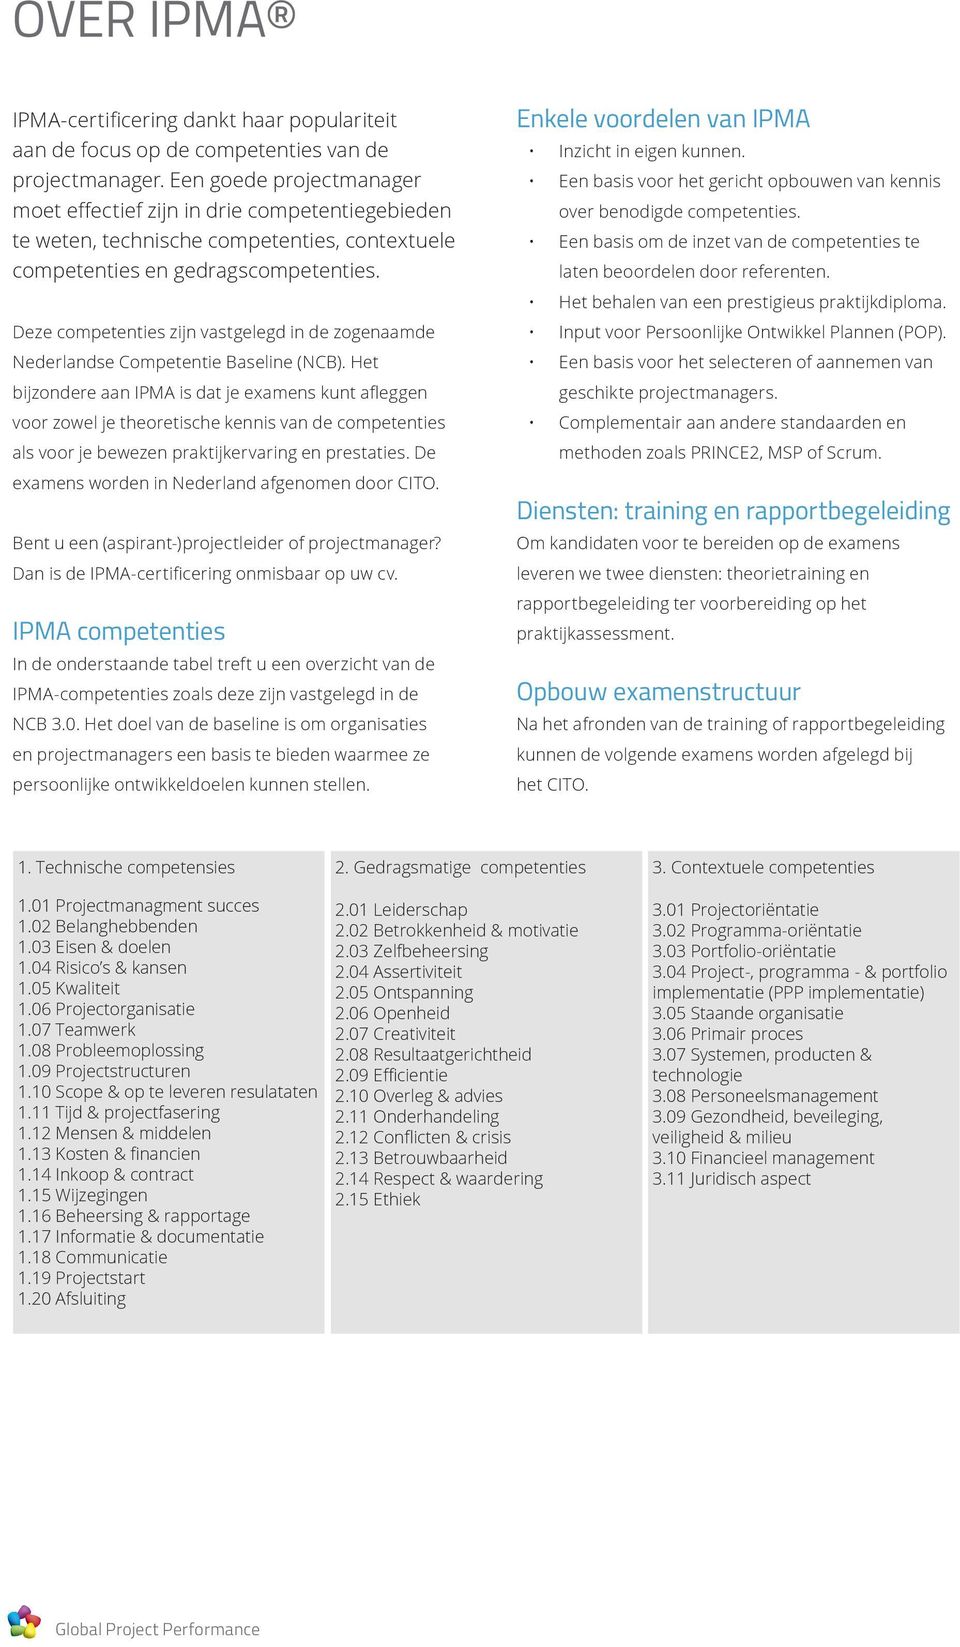 Deze competenties zijn vastgelegd in de zogenaamde Nederlandse Competentie Baseline (NCB).